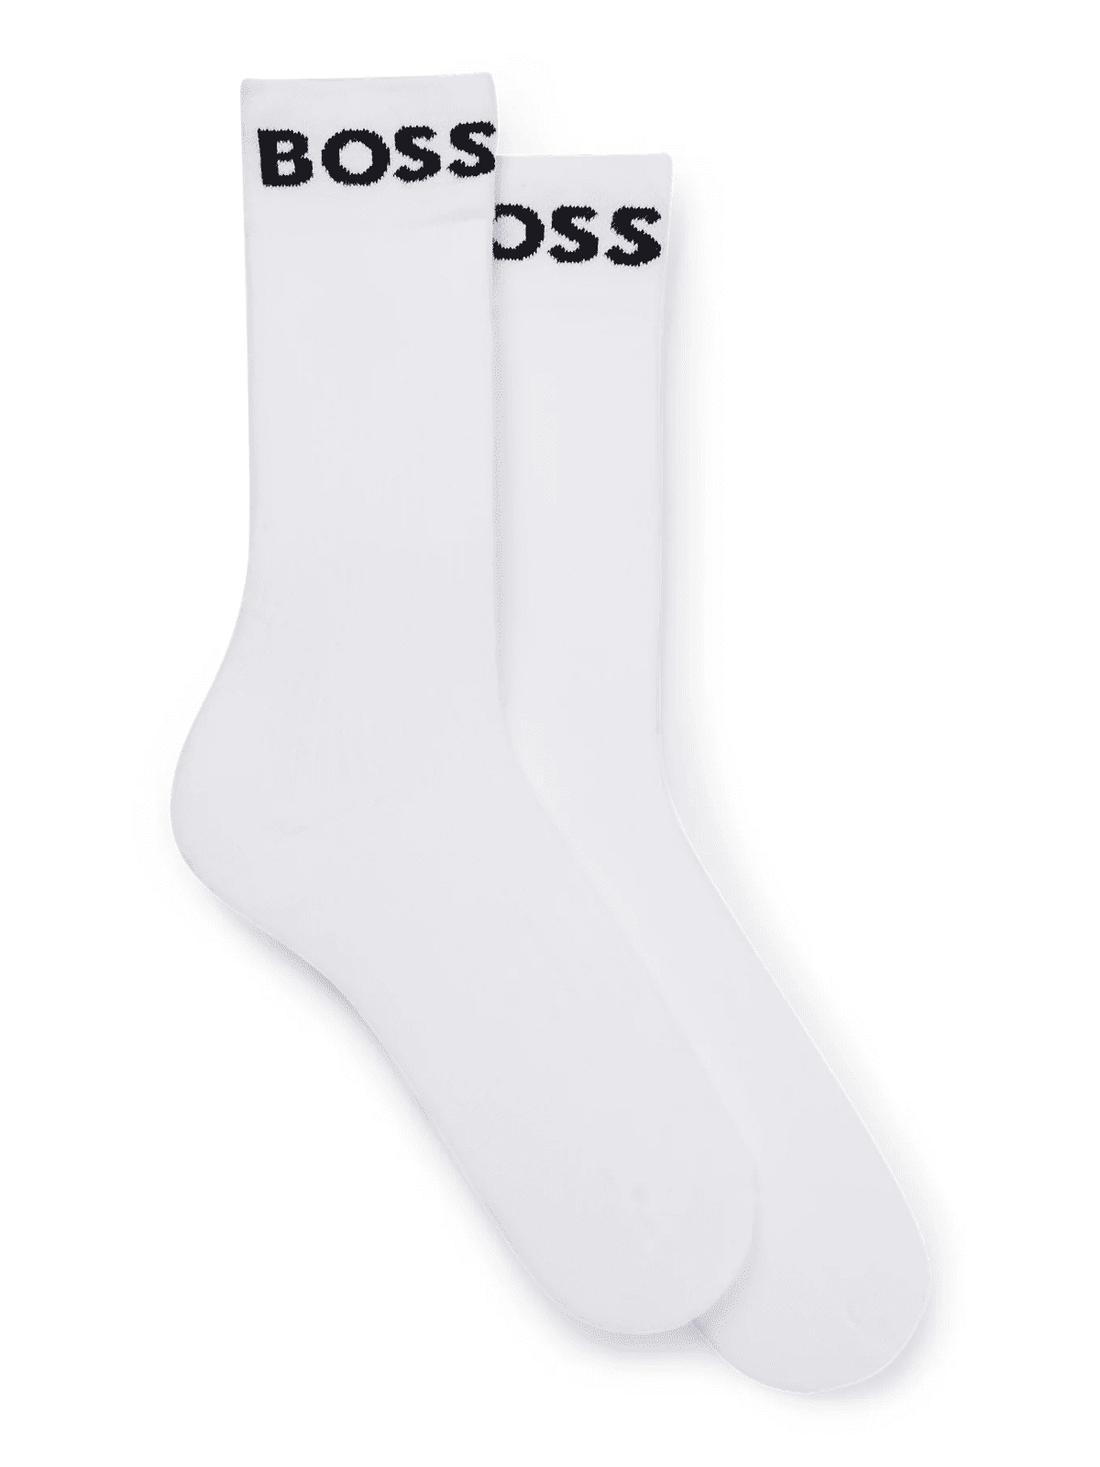 2-Pack Sport Socks White